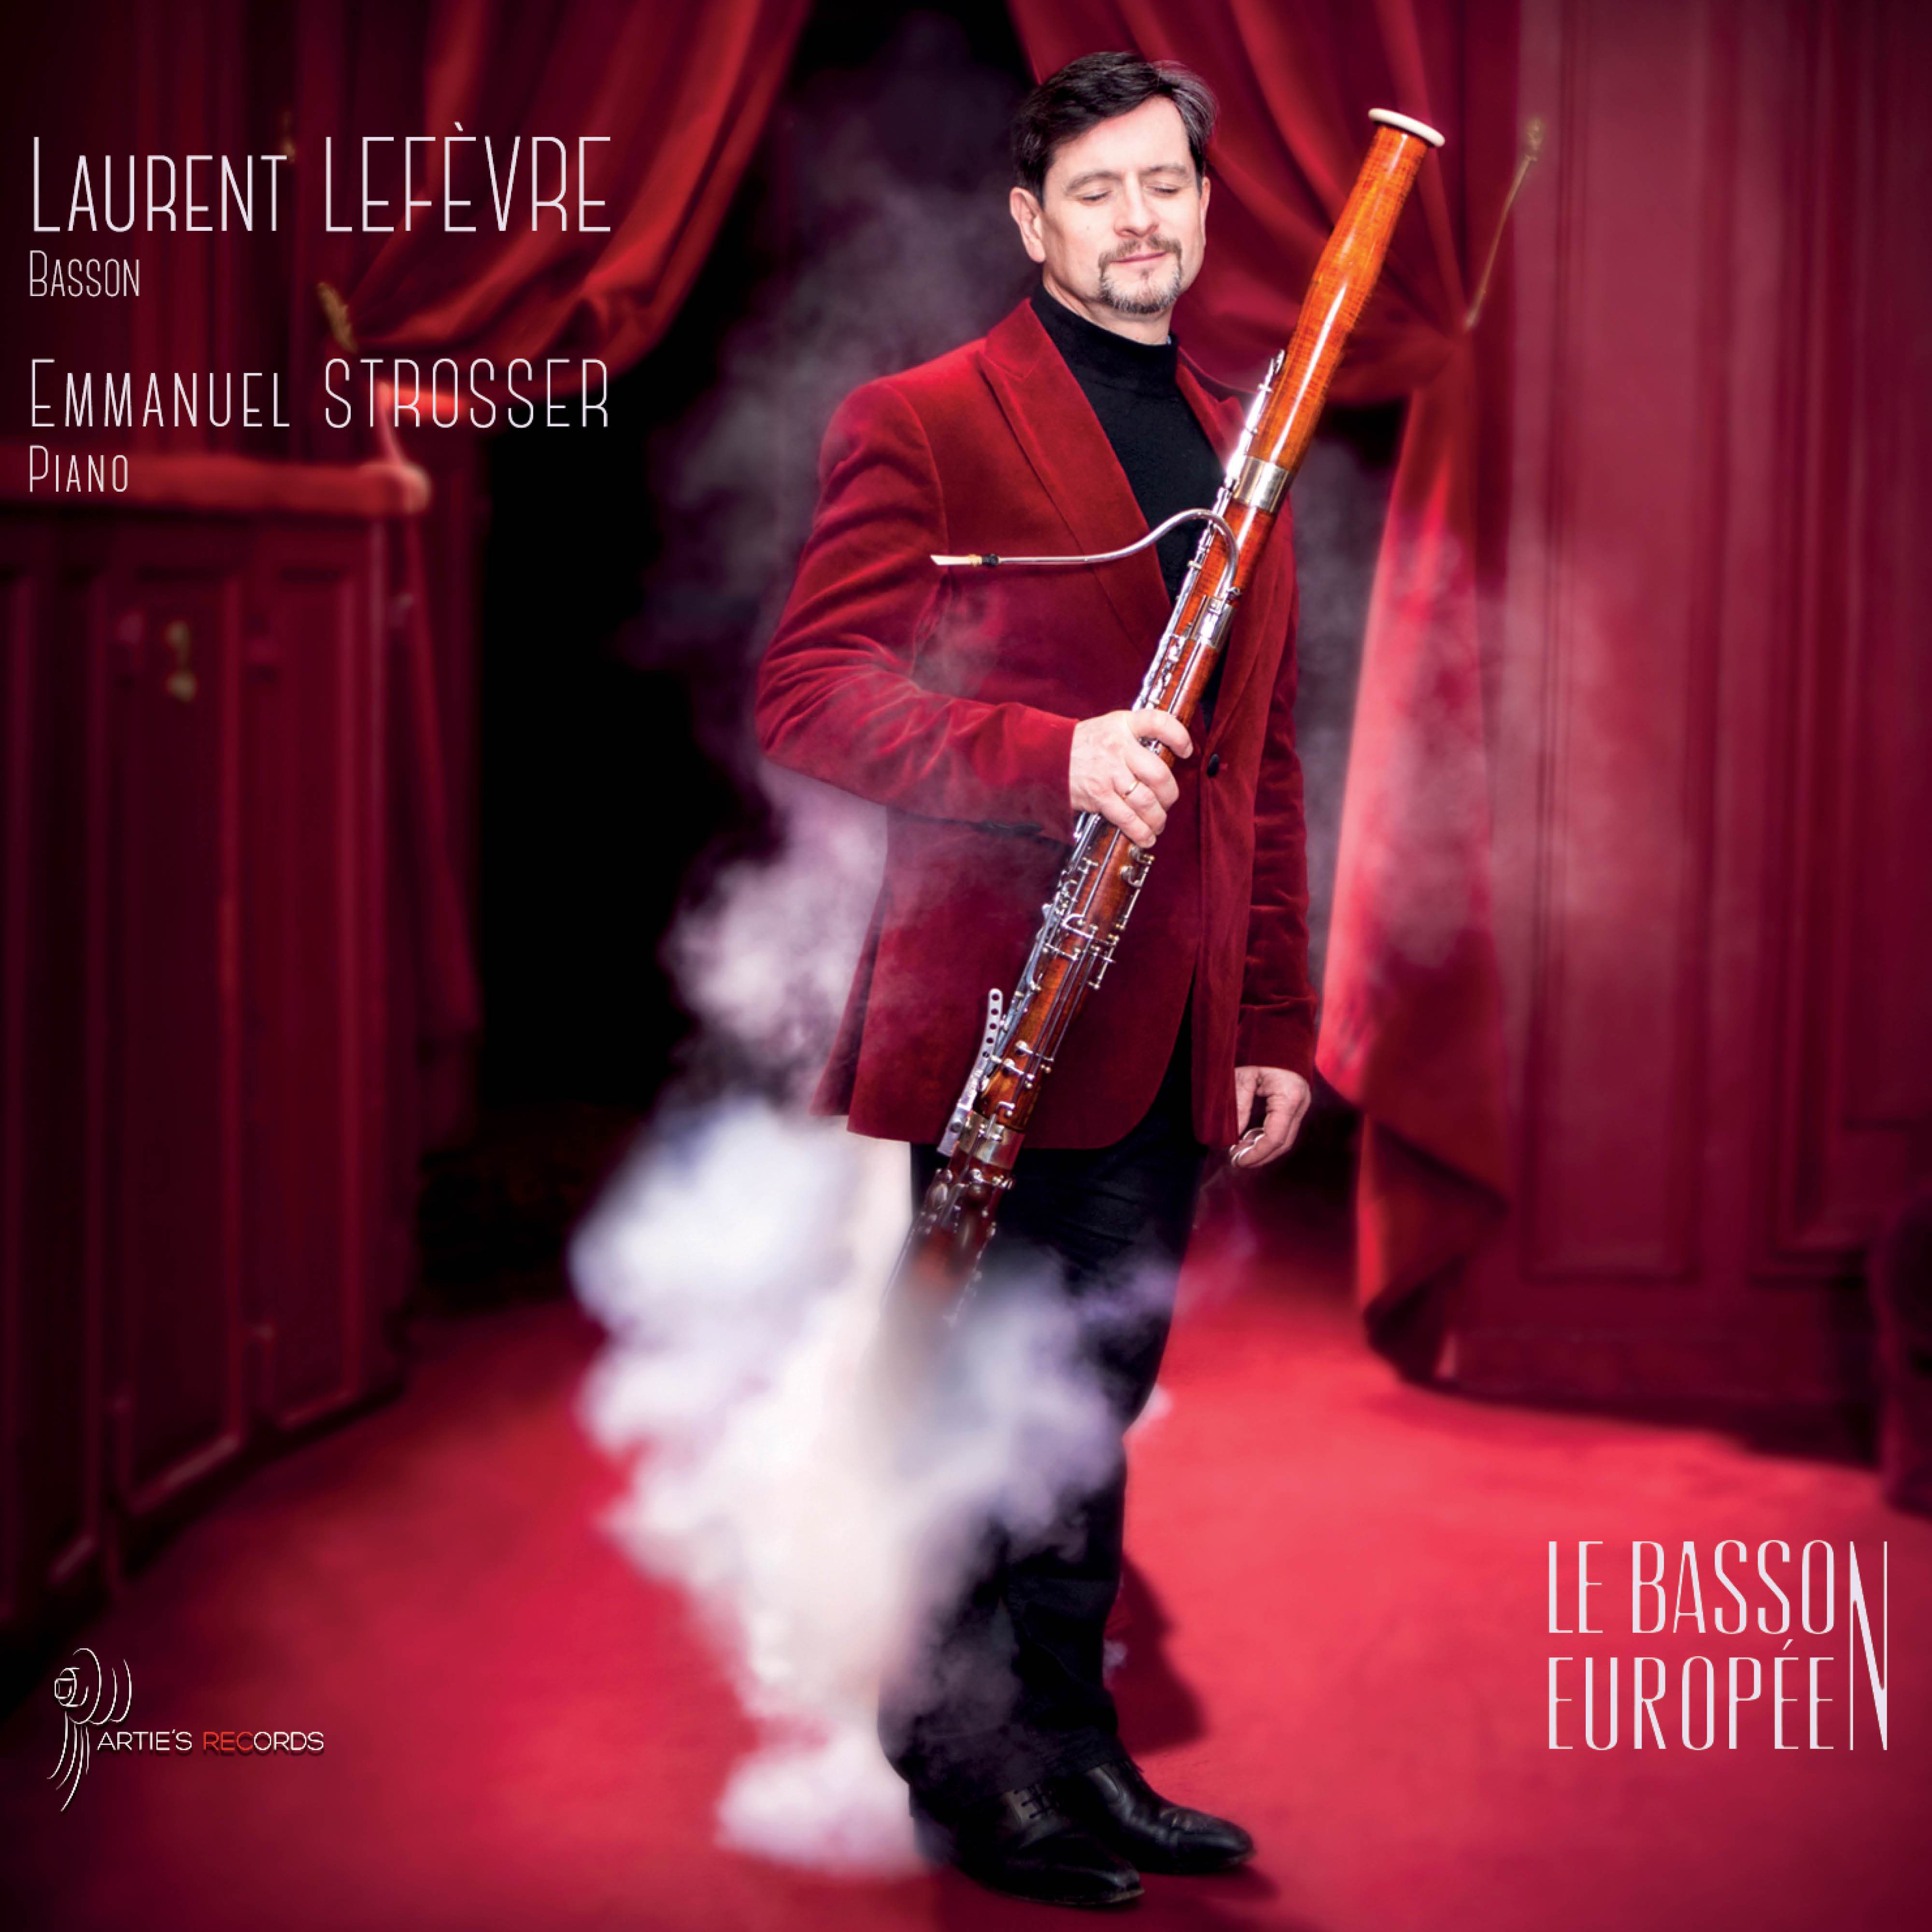 Laurent Lefevre - Sonate pour basson avec accompagnement piano Op. 168:III. Molto adagio - Allegro moderato